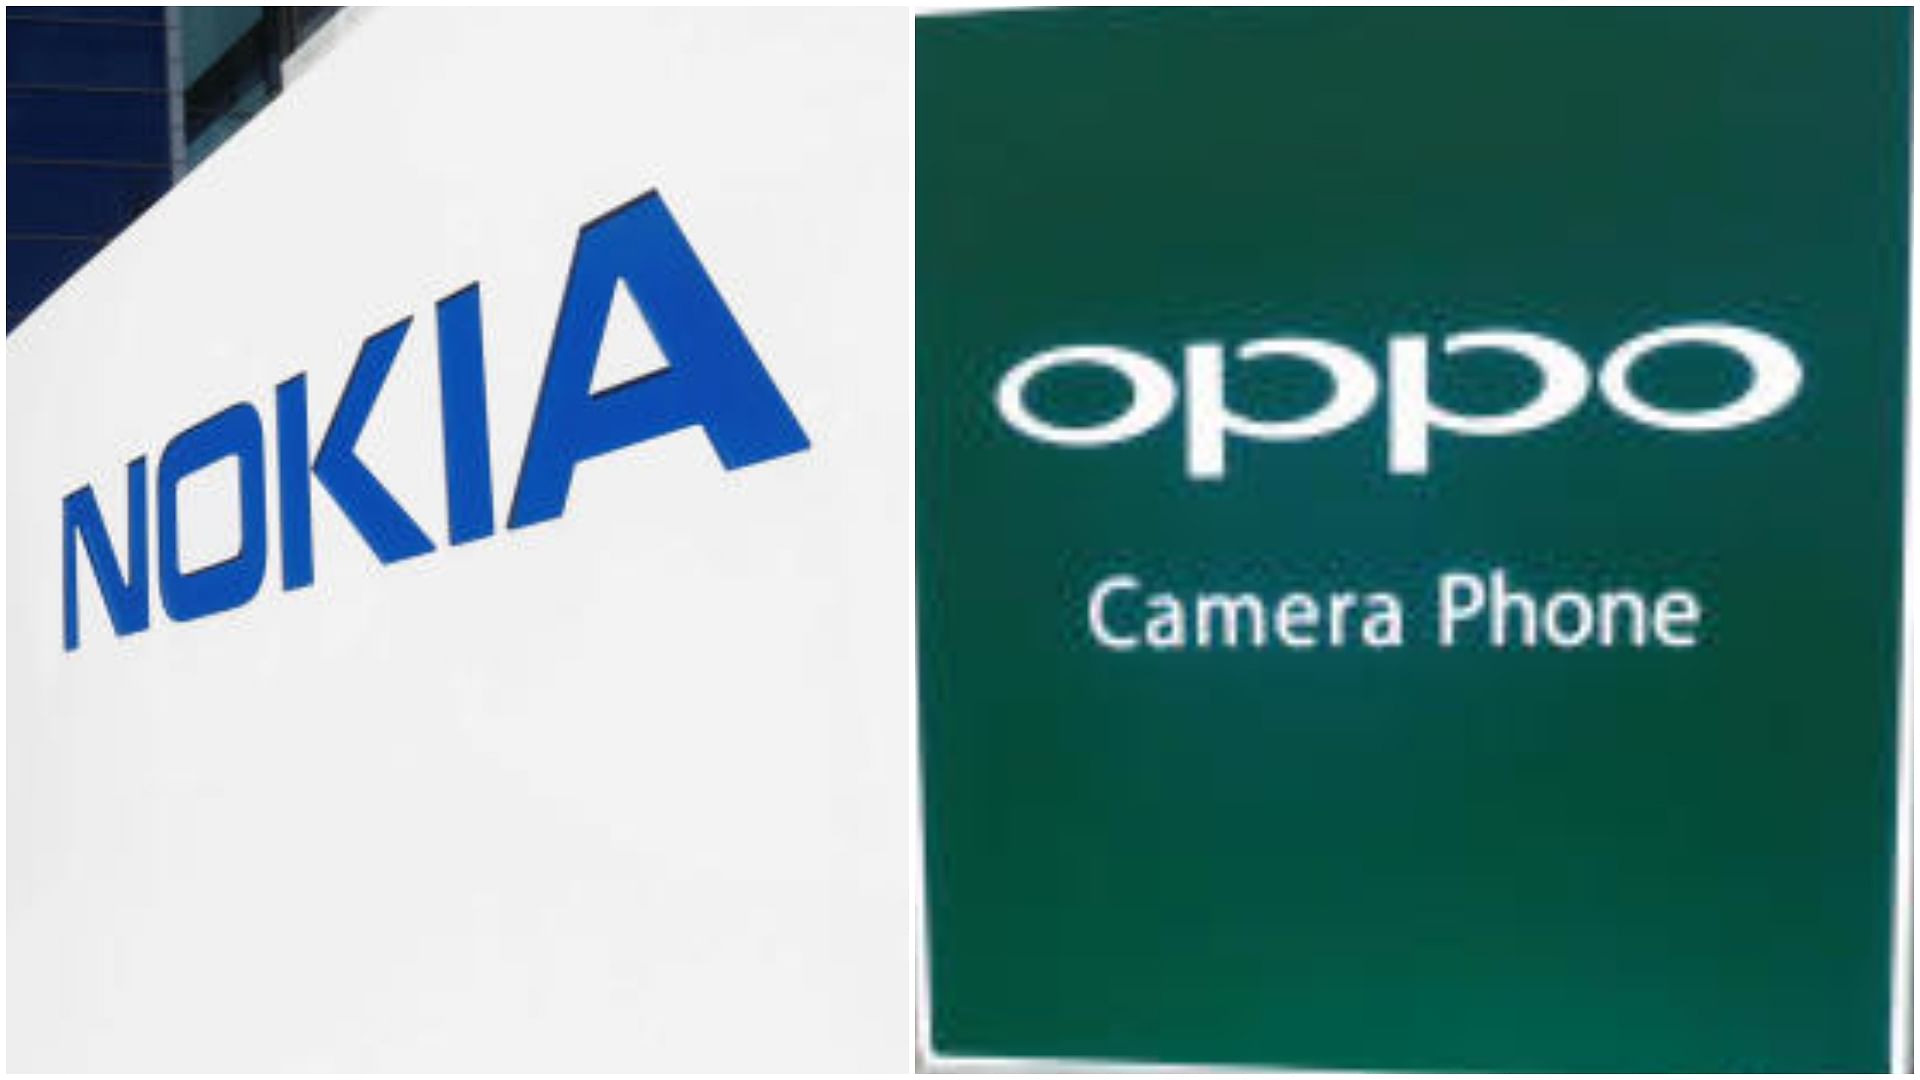 <div class="paragraphs"><p>Logos of Nokia and Oppo.</p></div>